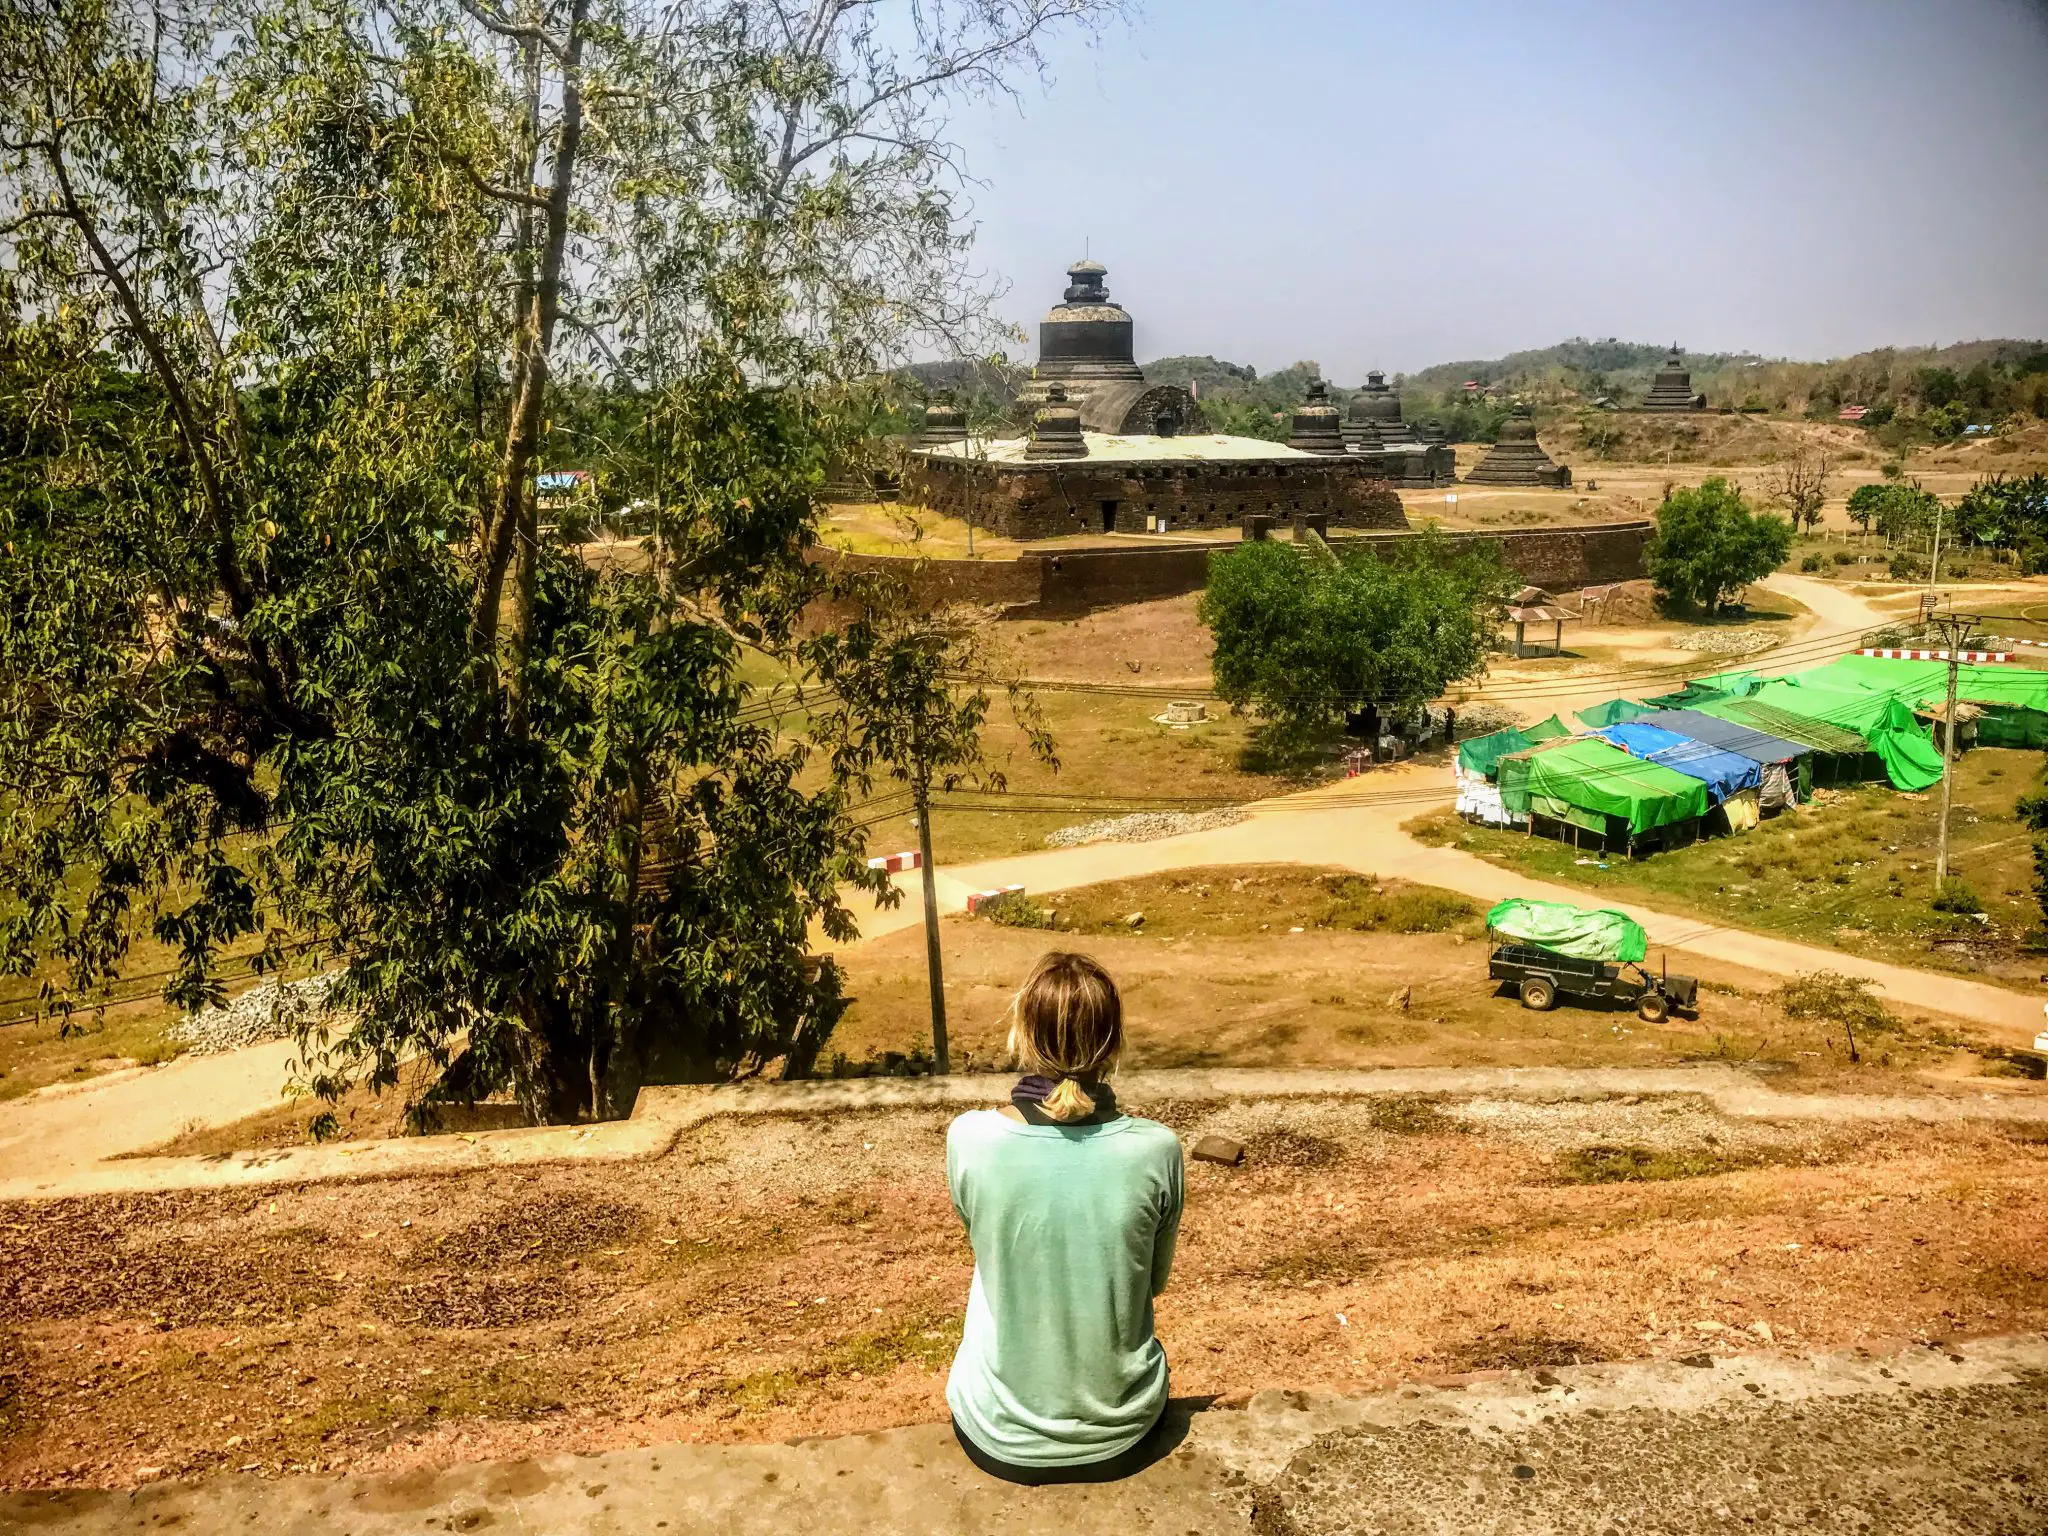 Looking at Htukkanthein Temple in Mrauk U, Myanmar